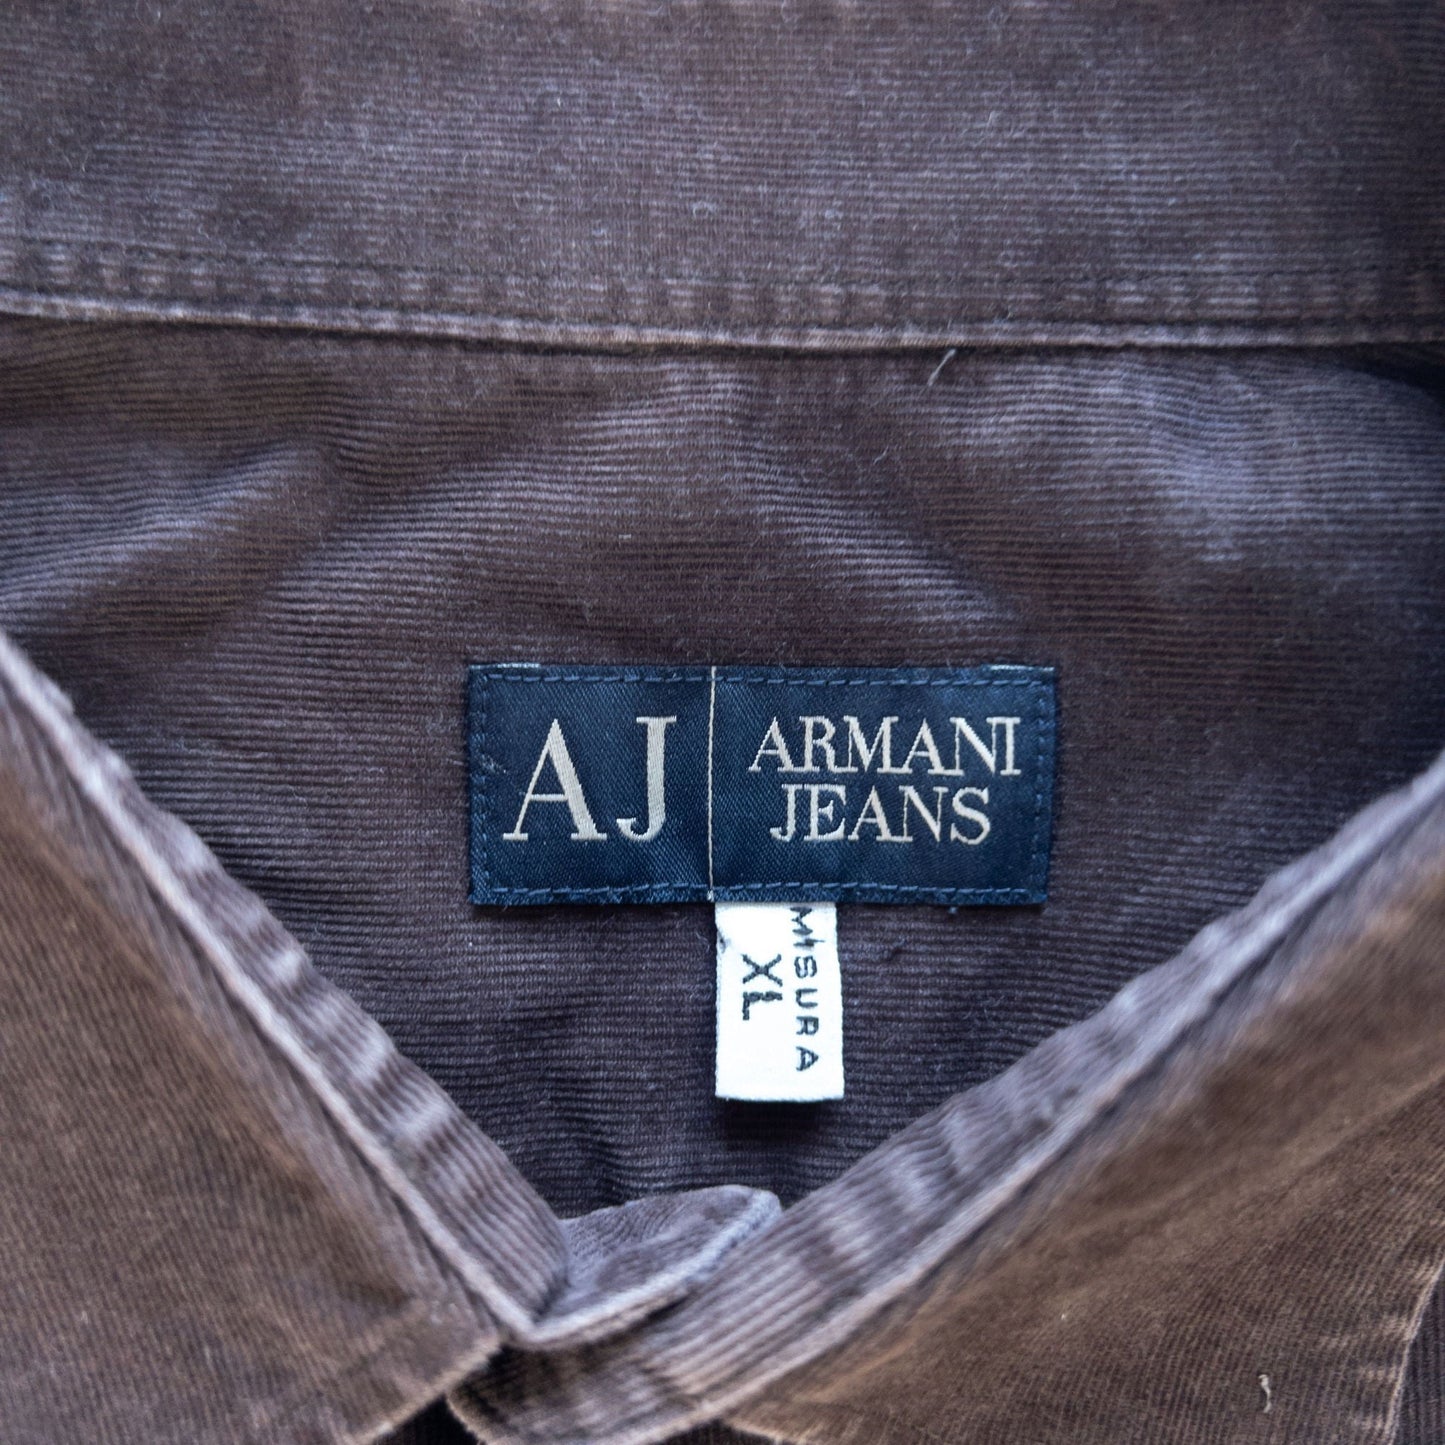 Vintage Armani Jeans Corduroy Button Up Shirt Size L